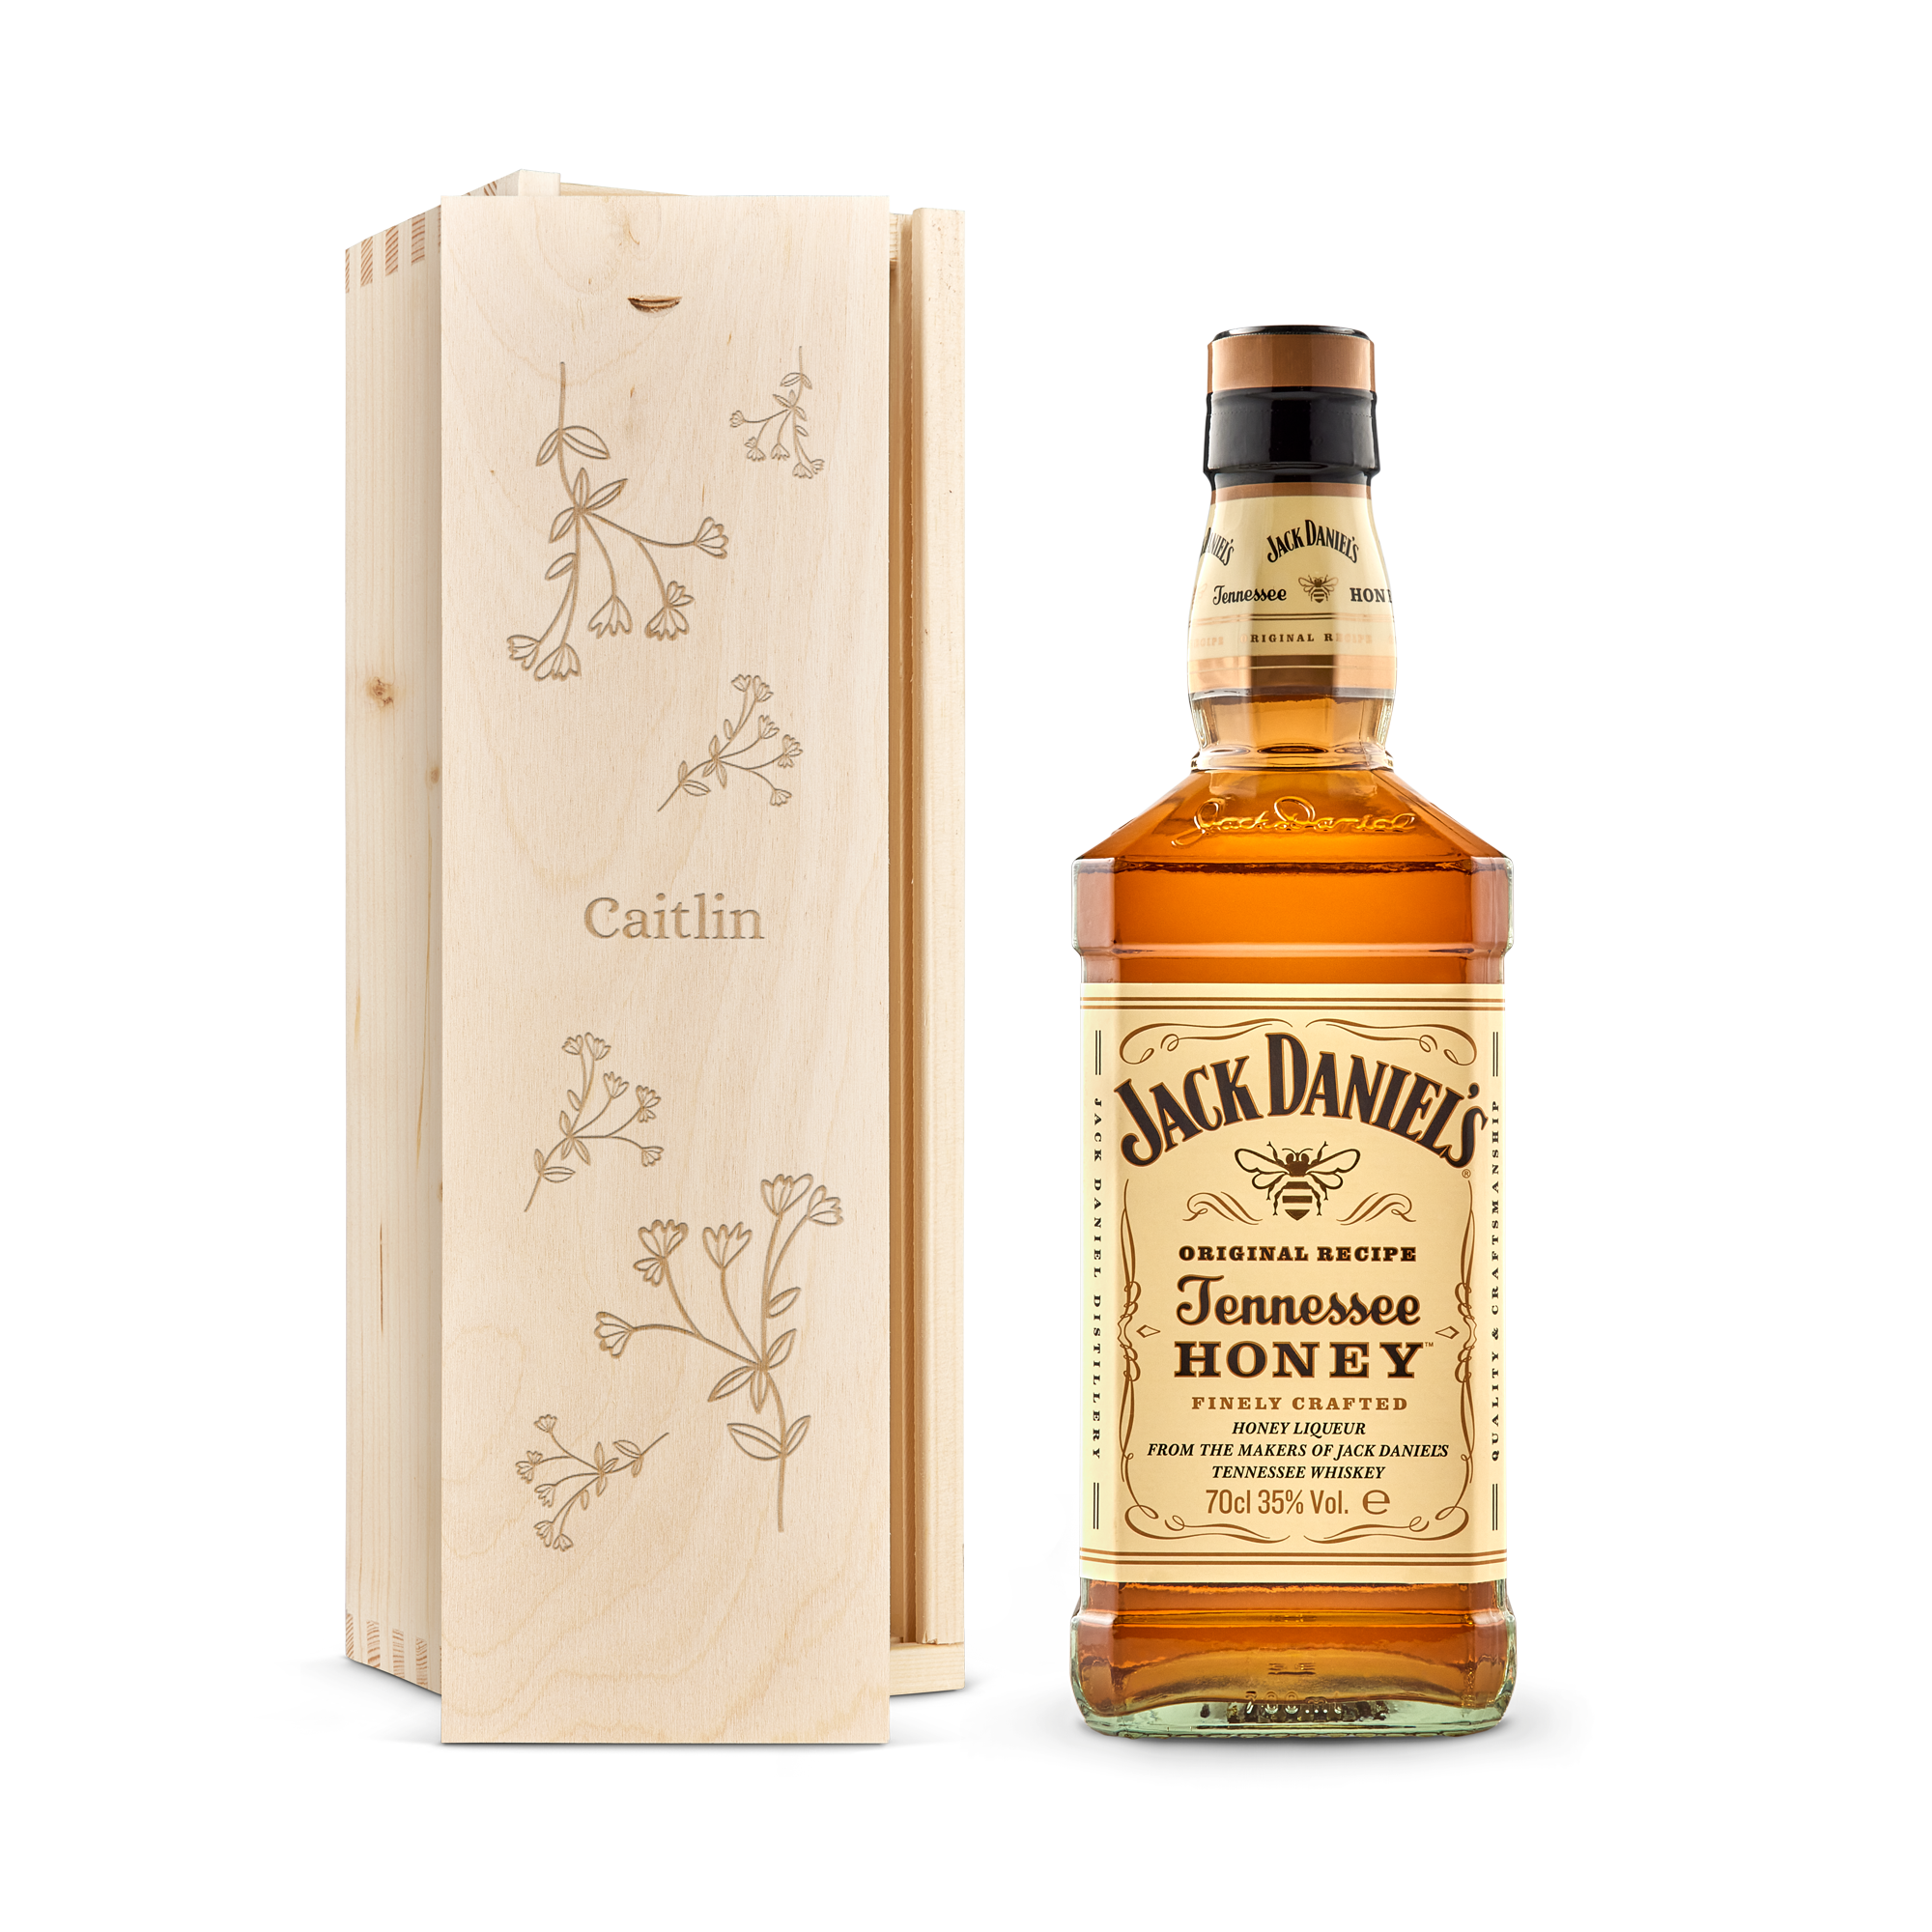 Whisky - Jack Daniel's Honey